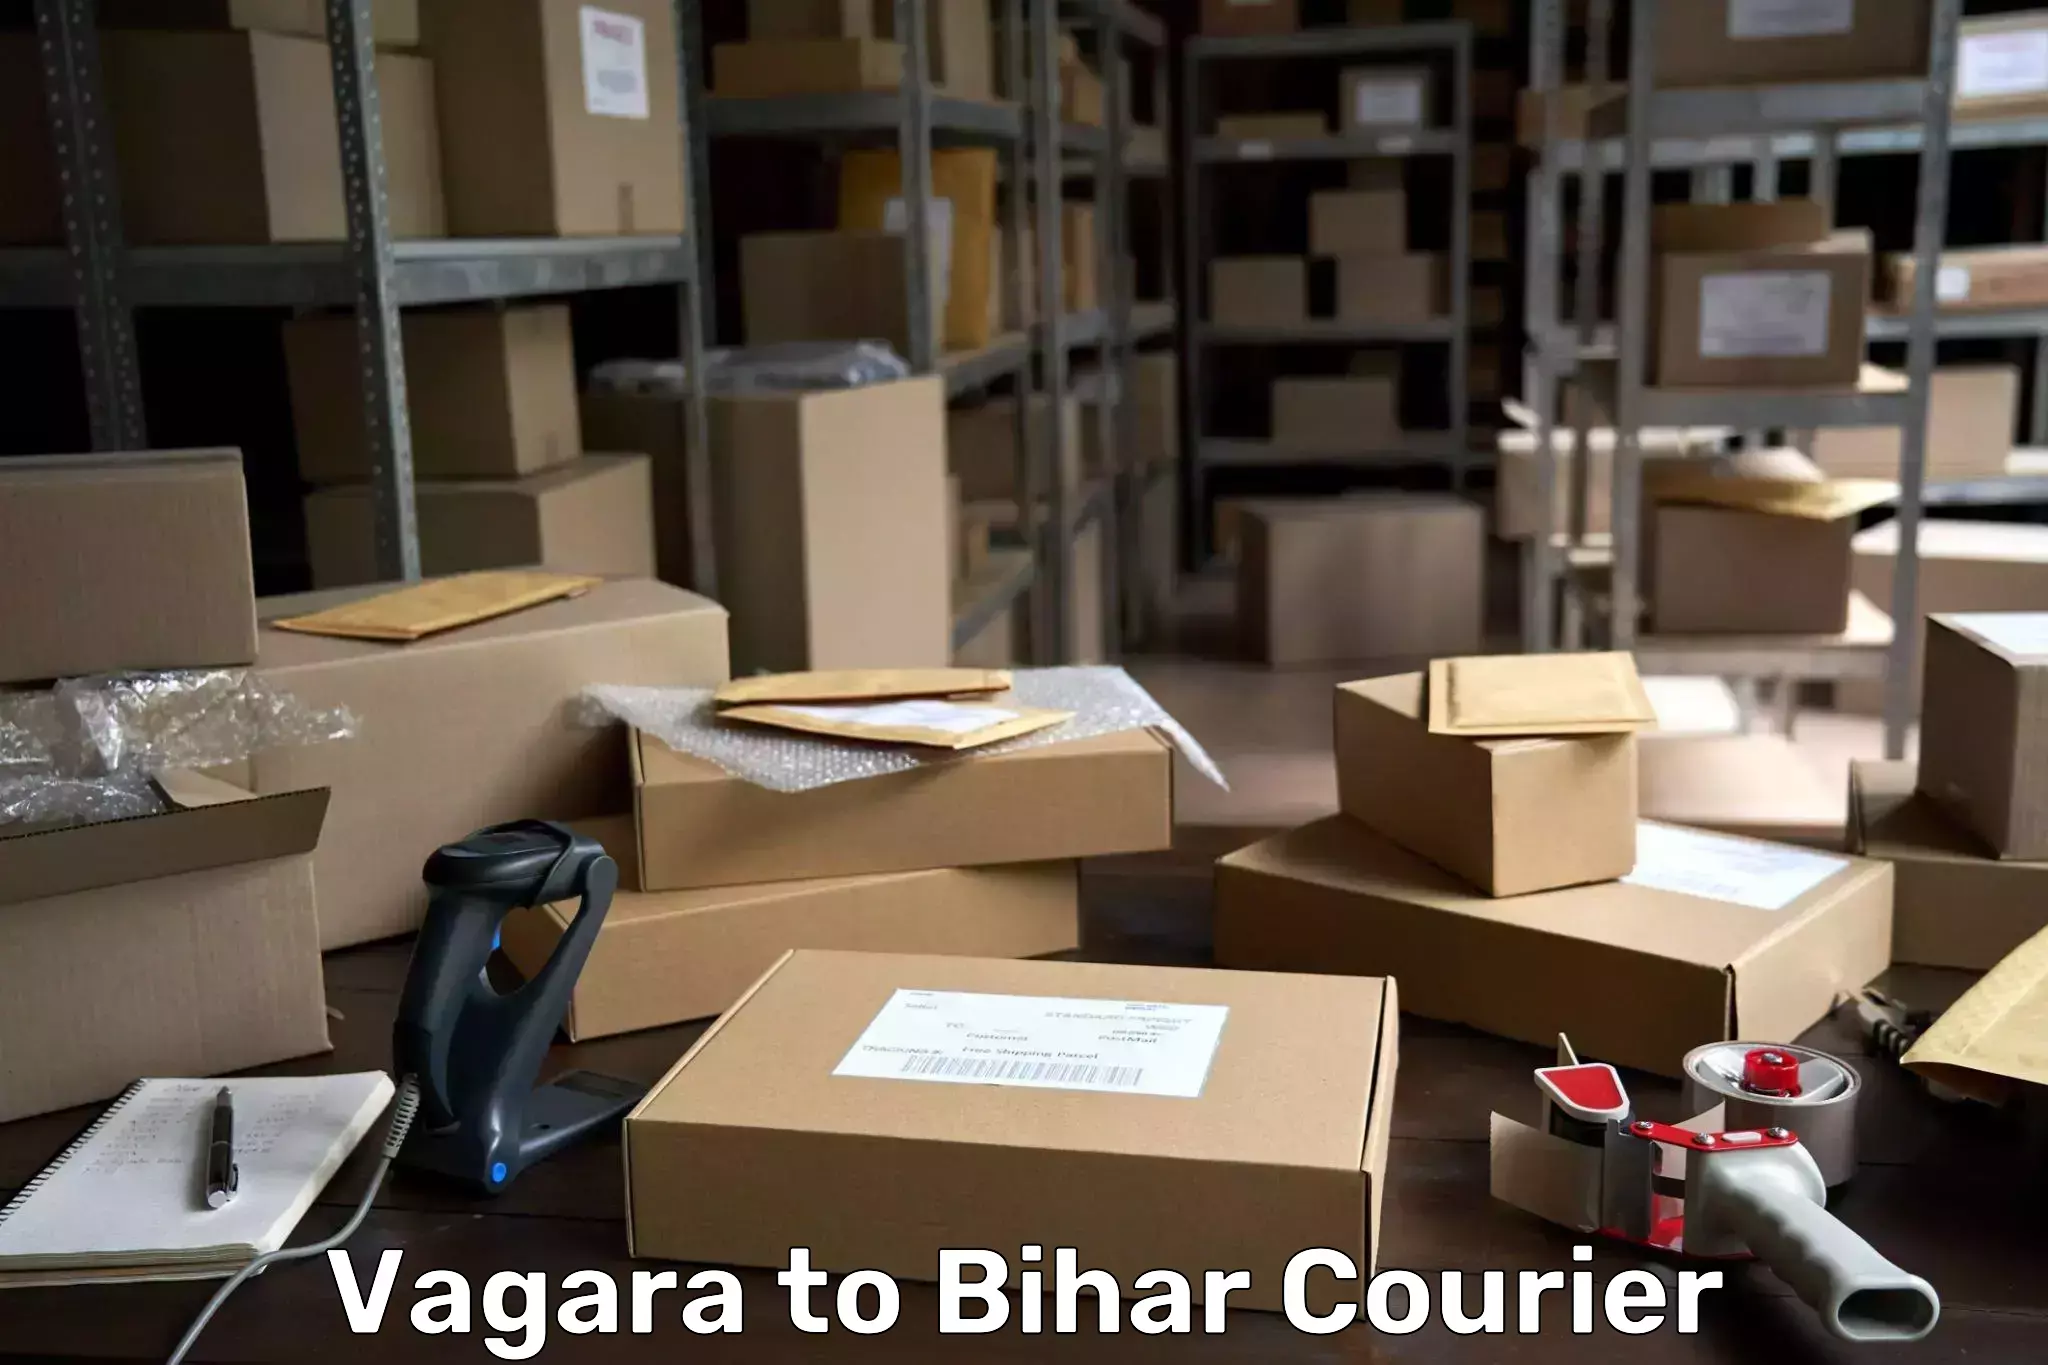 24/7 shipping services Vagara to Sheikhpura